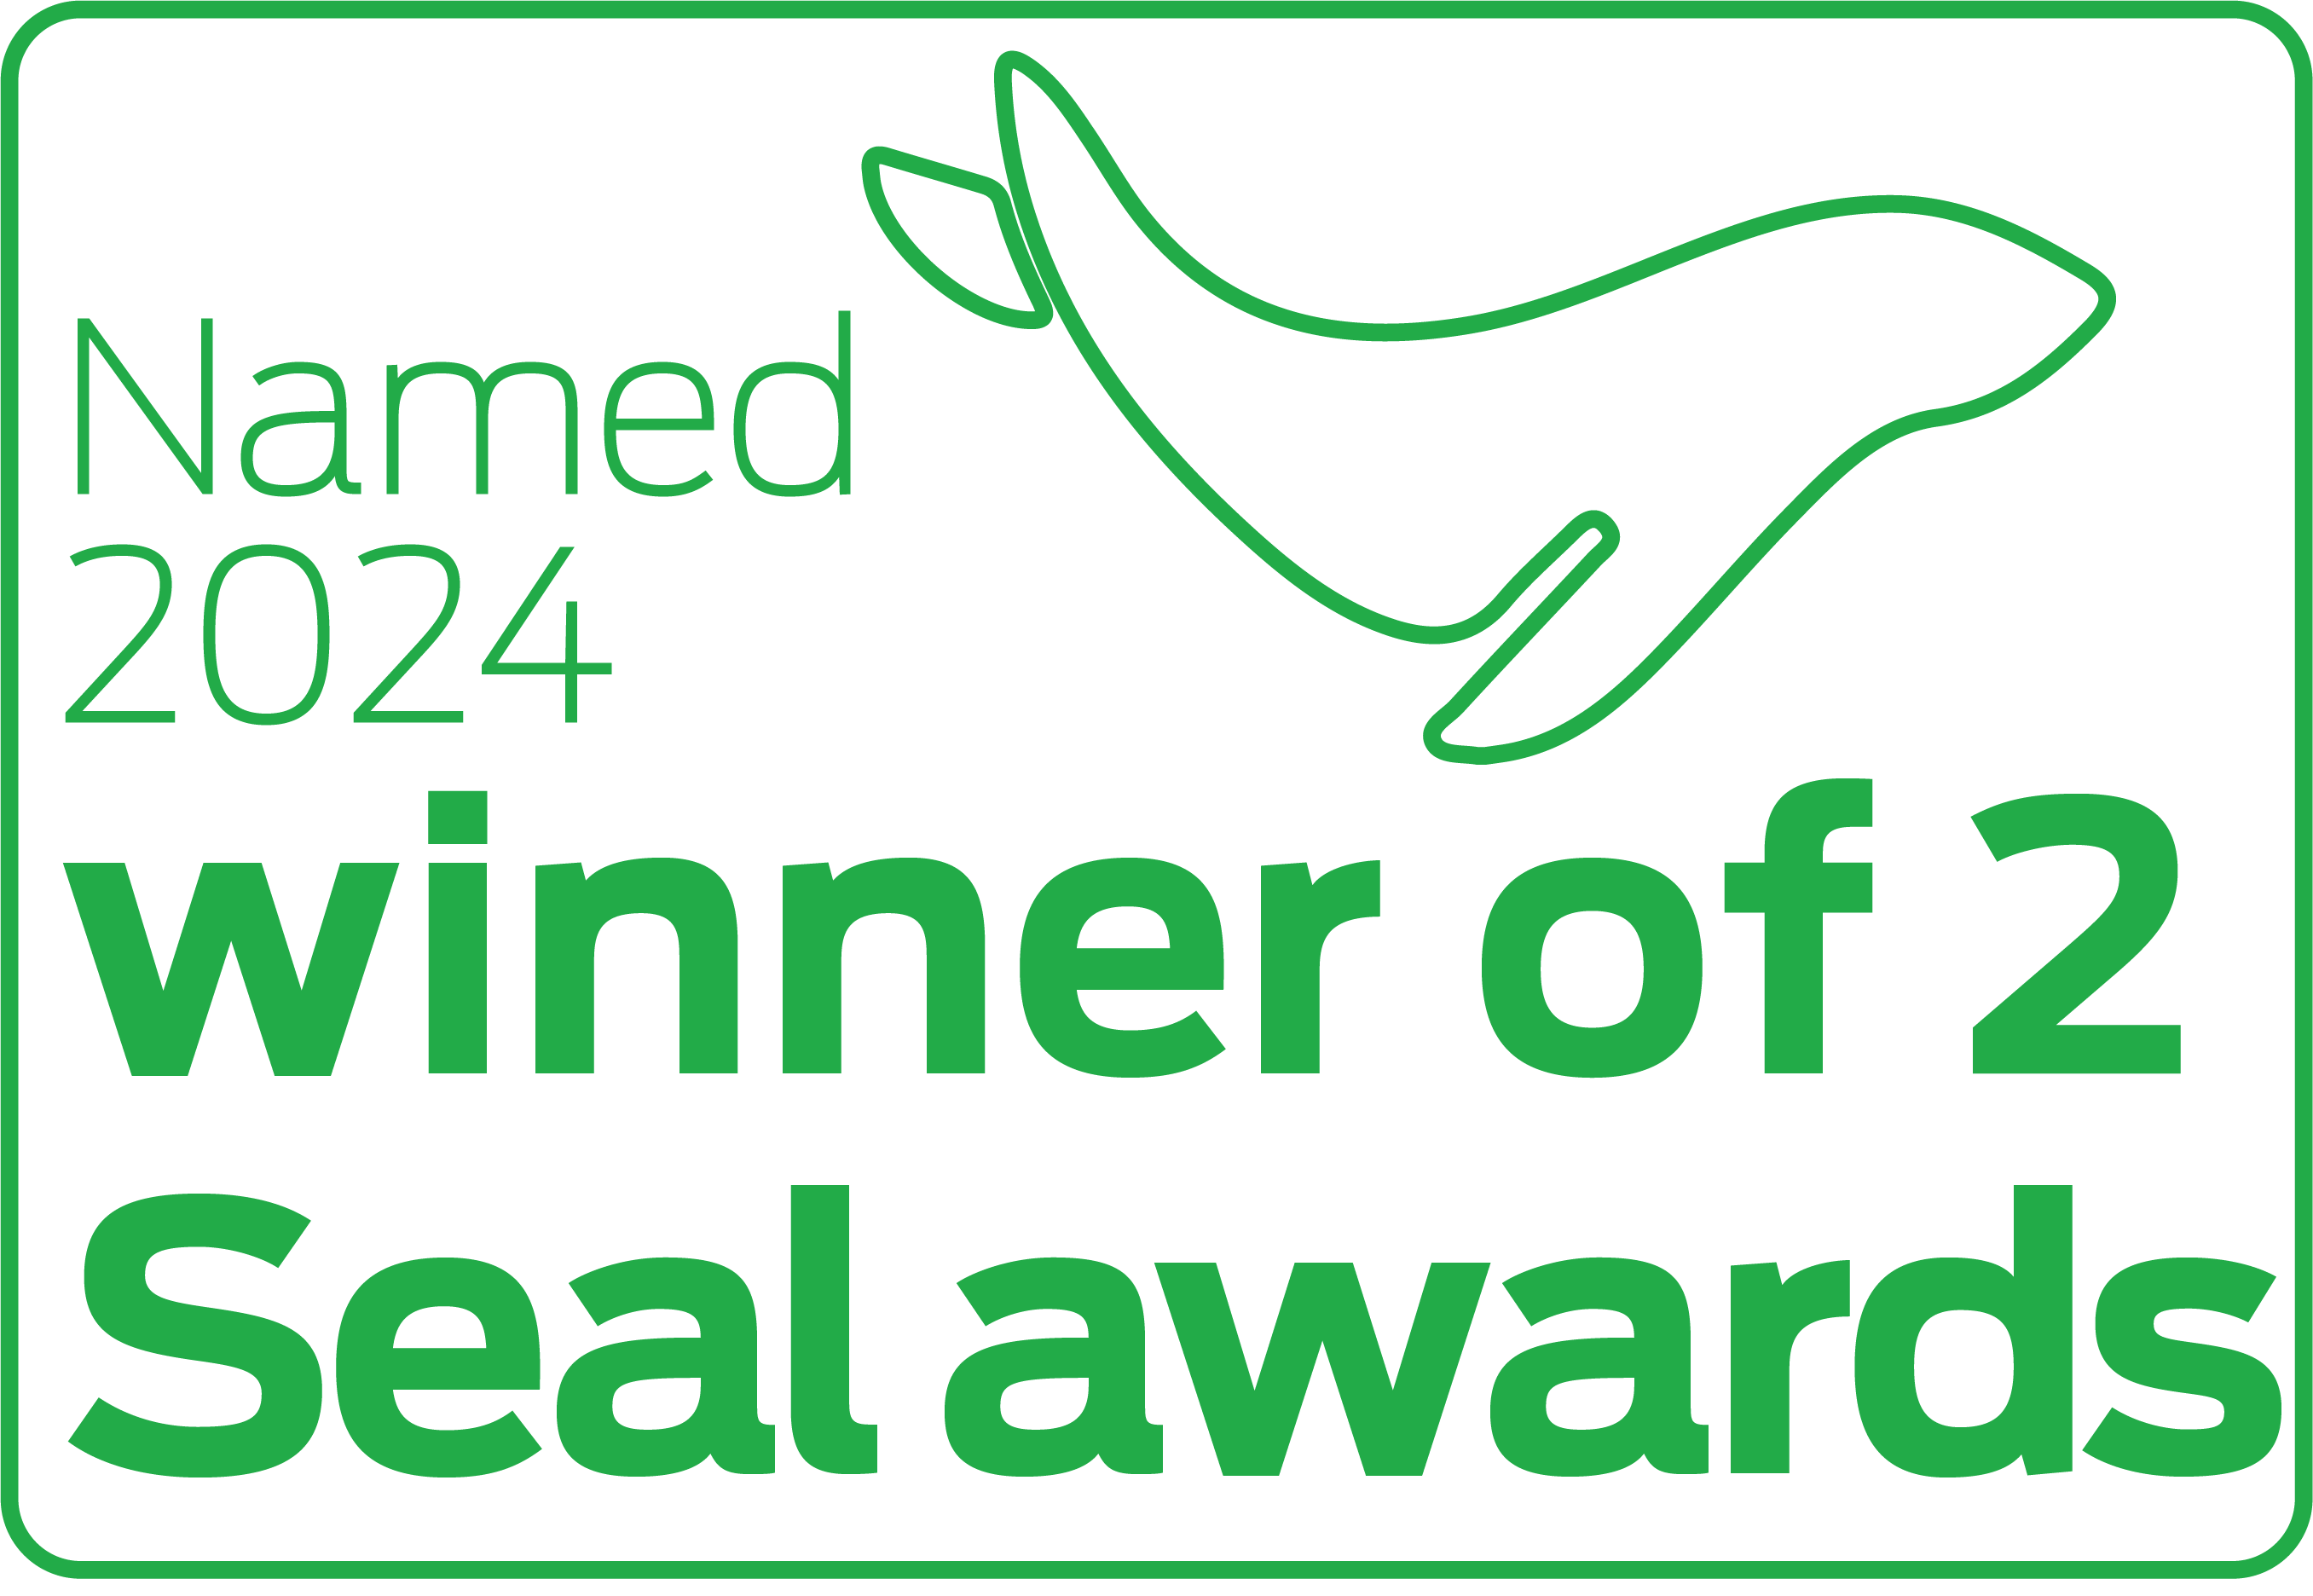 Named 2024 winner of 2 Seal awards